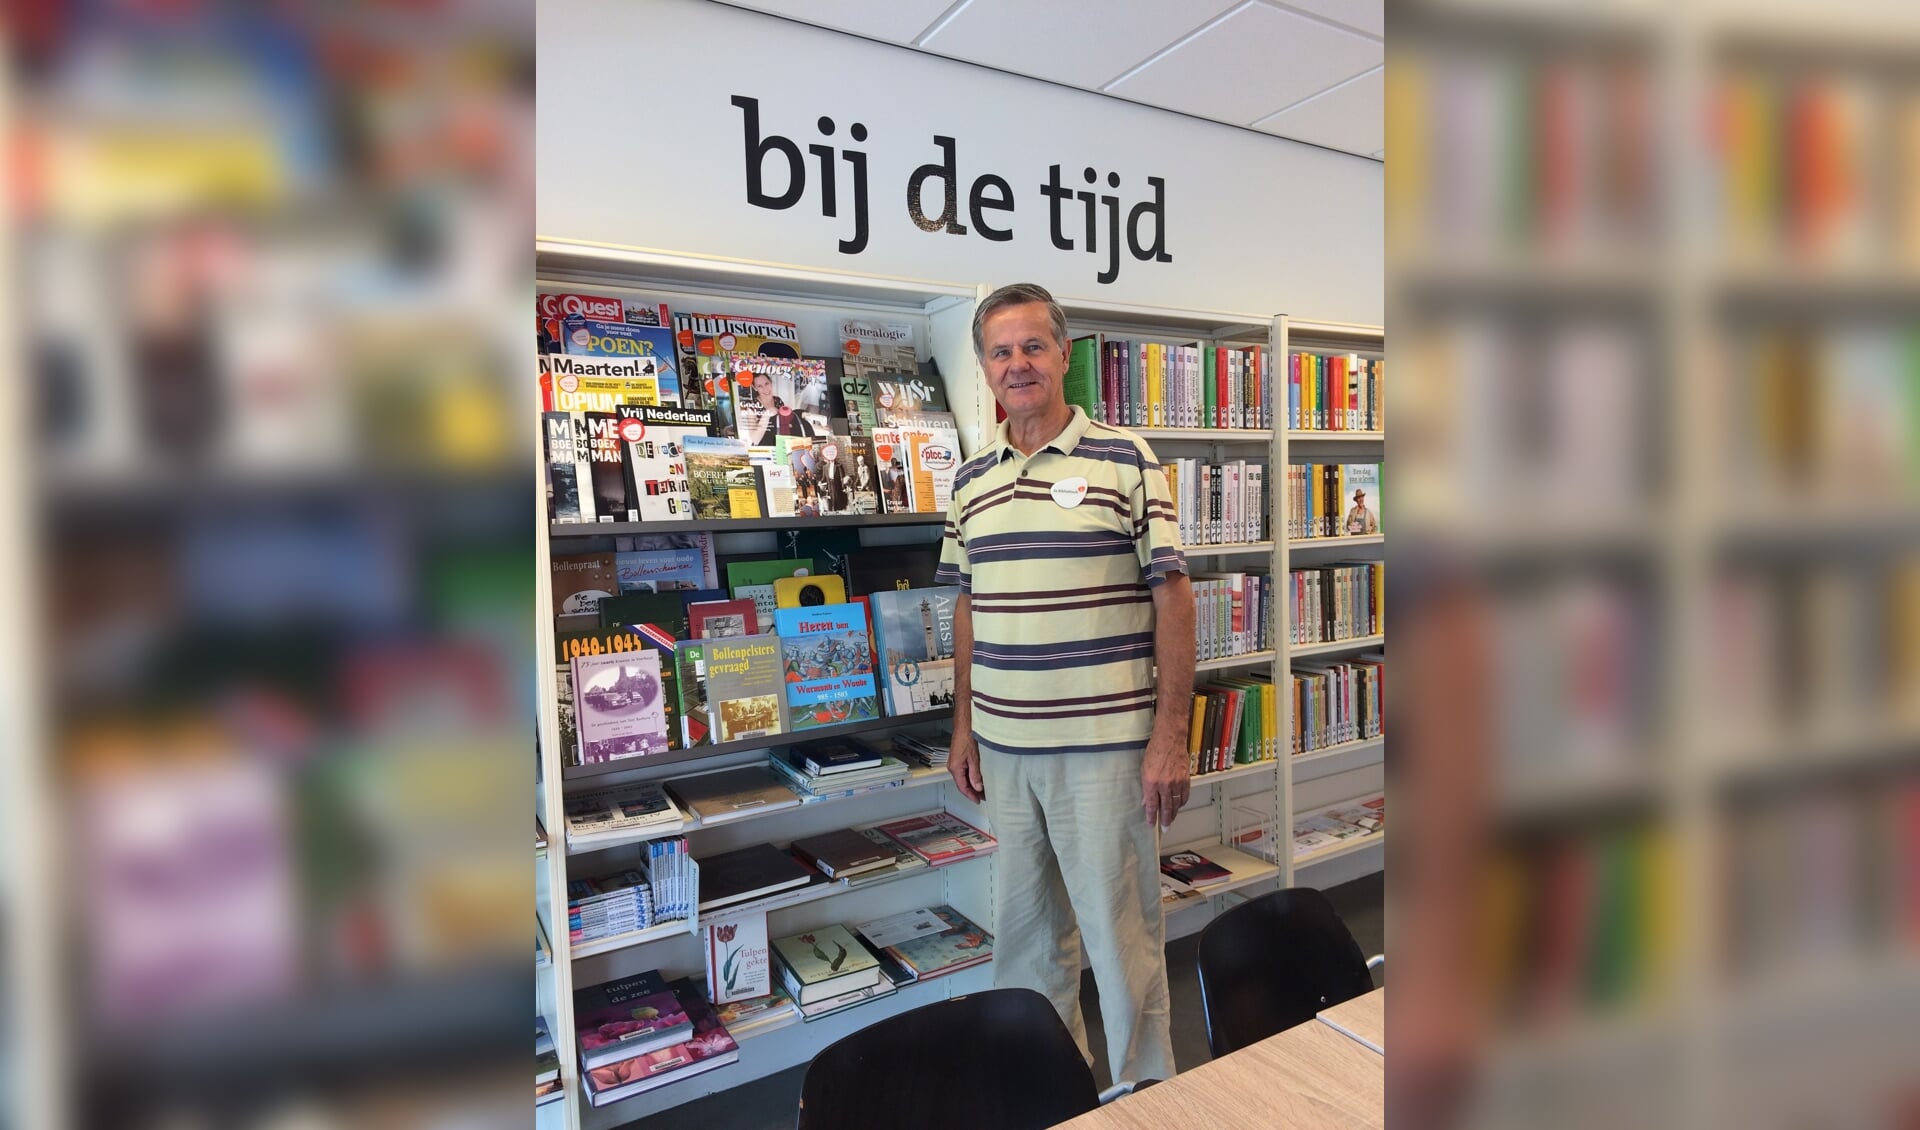 Kees den Elzen is vrijwilliger in de bibliotheek en bij de Historische Kring. Hij geeft drie leestips over historische boeken. 